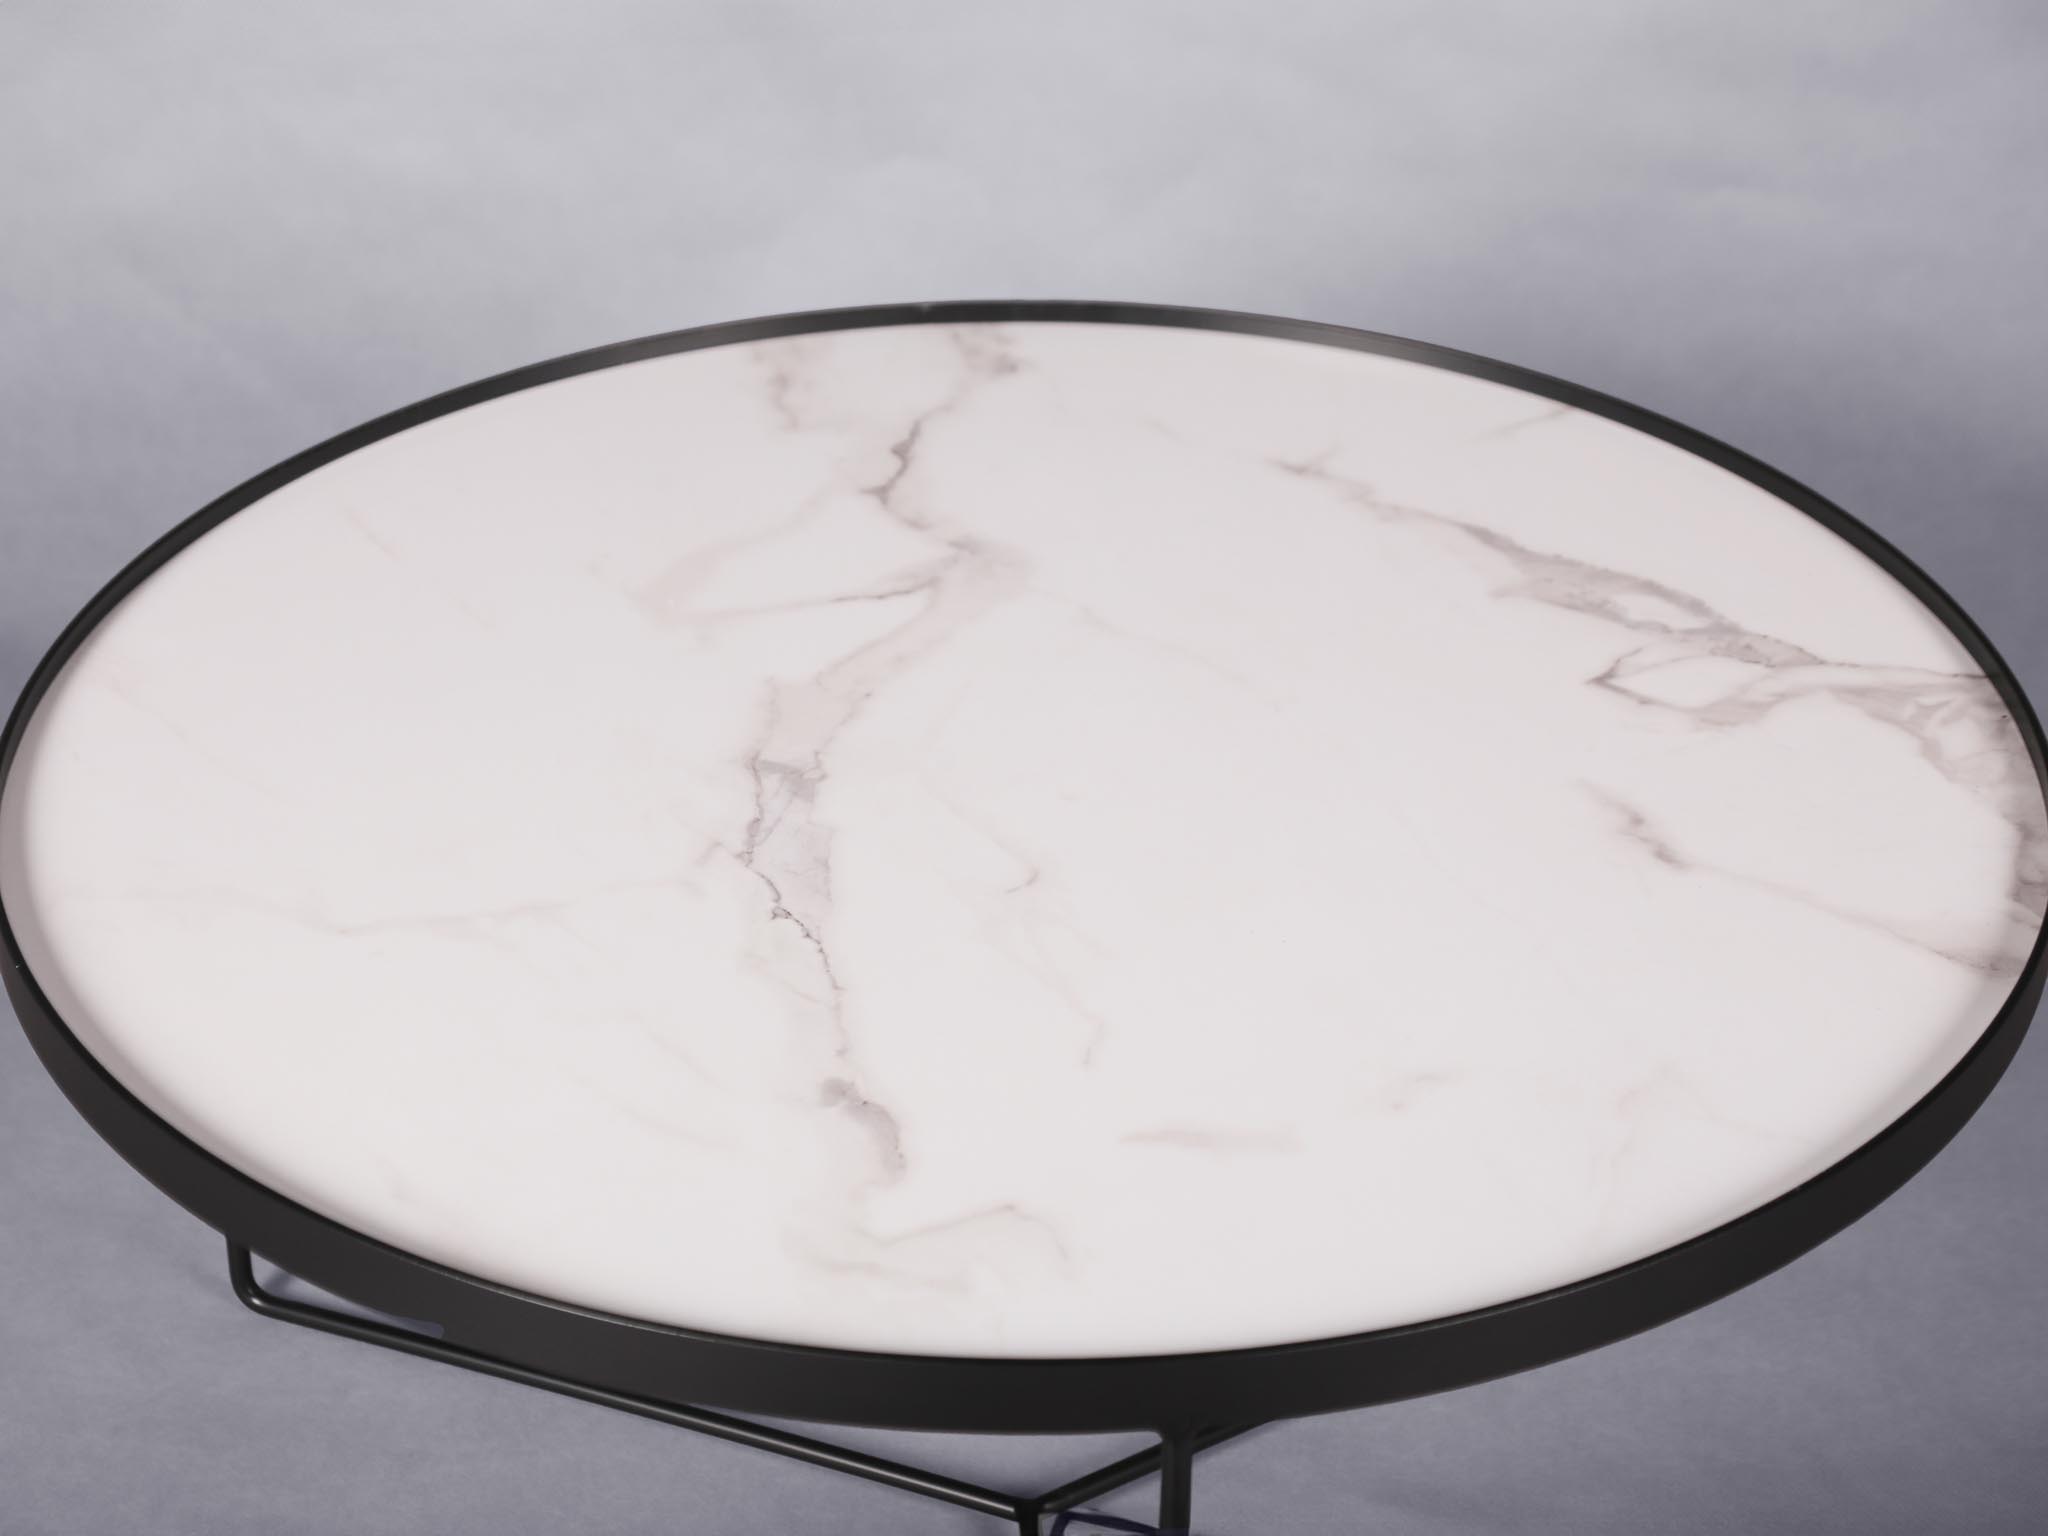 Modena coffee table - white thumnail image